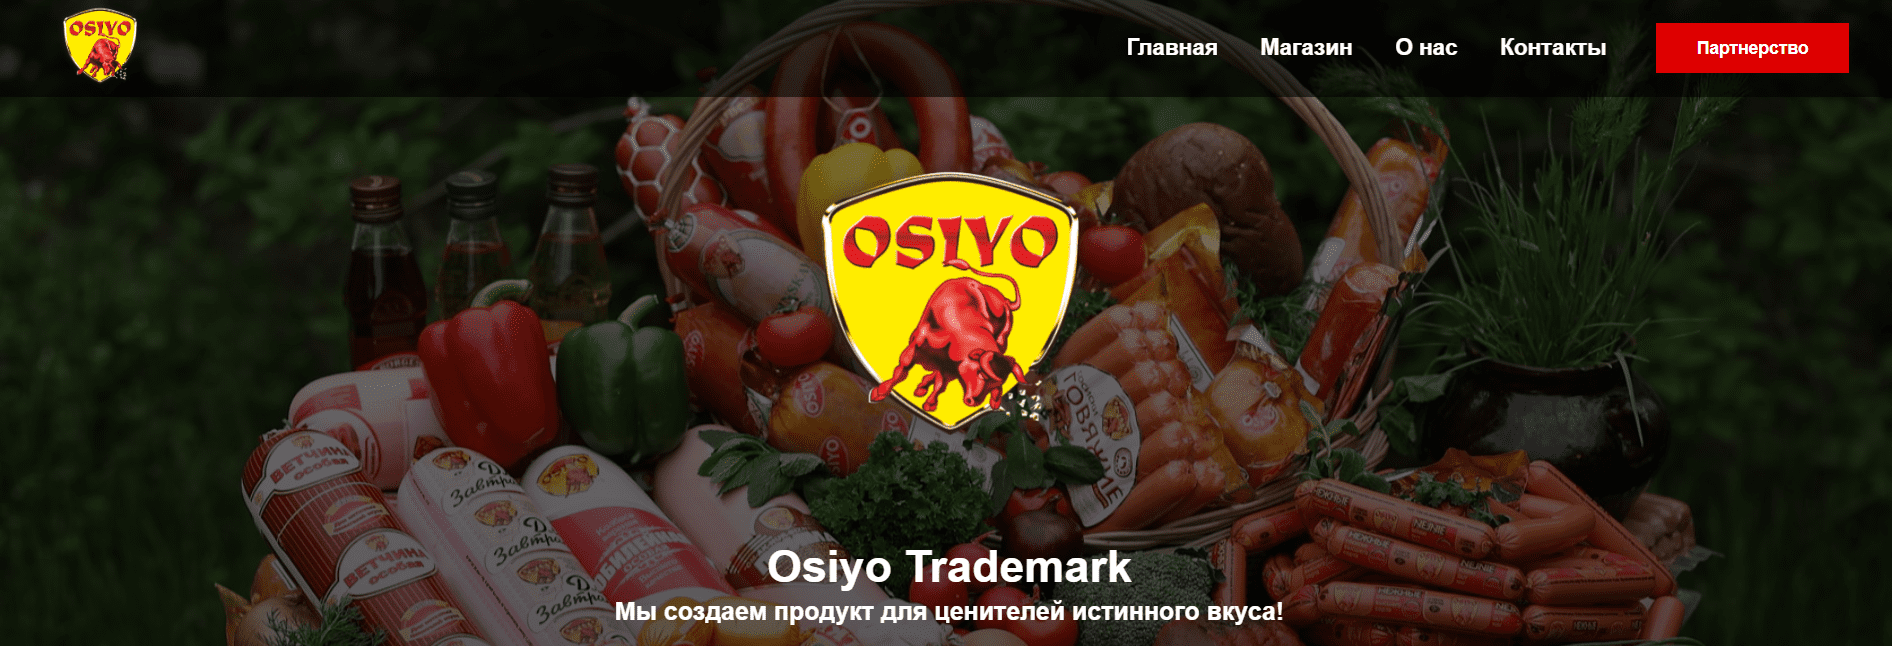 Ом-Ак-Нур-Бизнес (osiyotm.uz) - официальный сайт